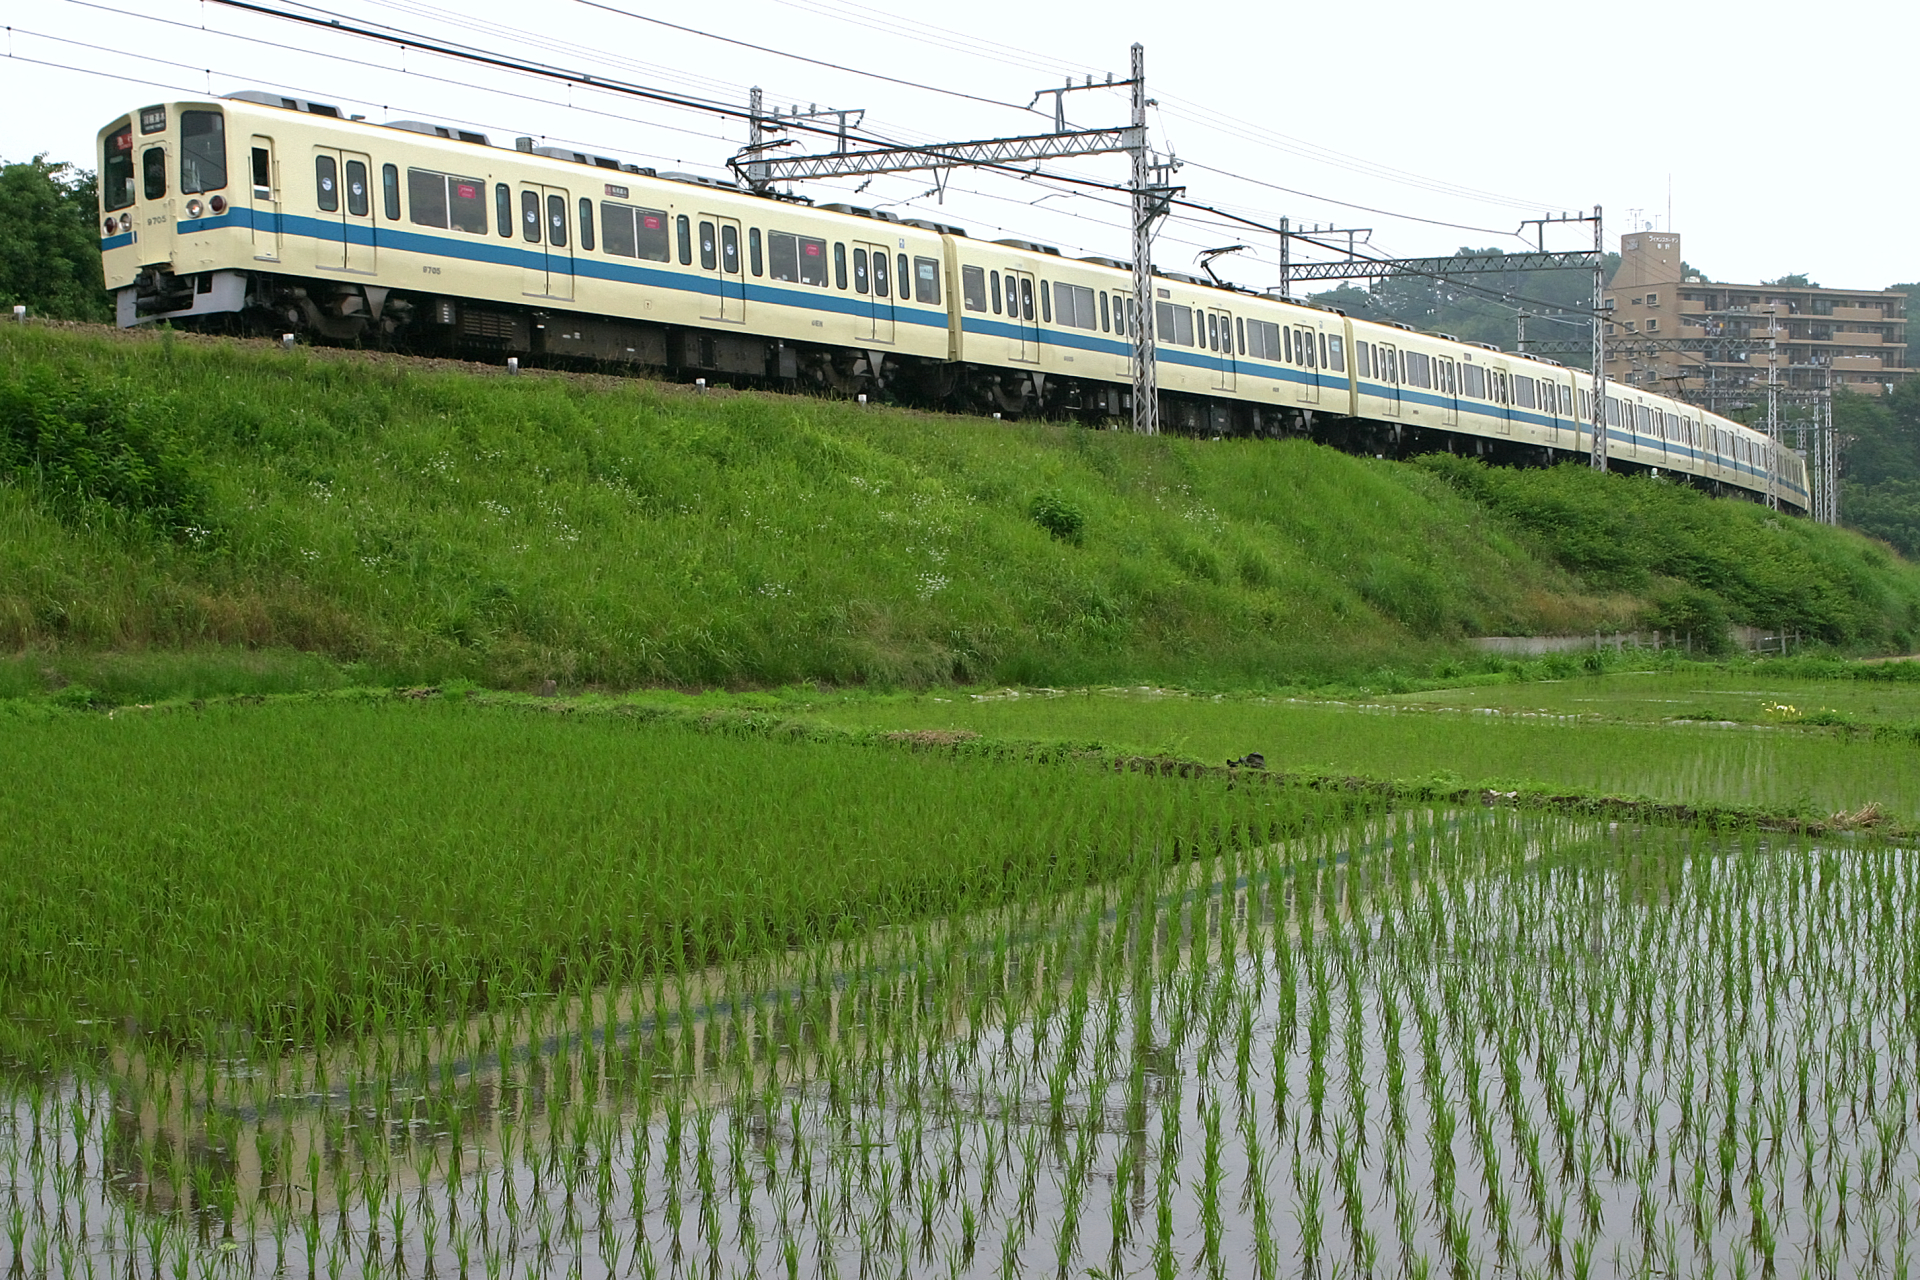 4000形や9000形が在籍する小田急は関東の大手私鉄の中では珍しいのか Odapedia 小田急を中心とした鉄道に関するブログメディア